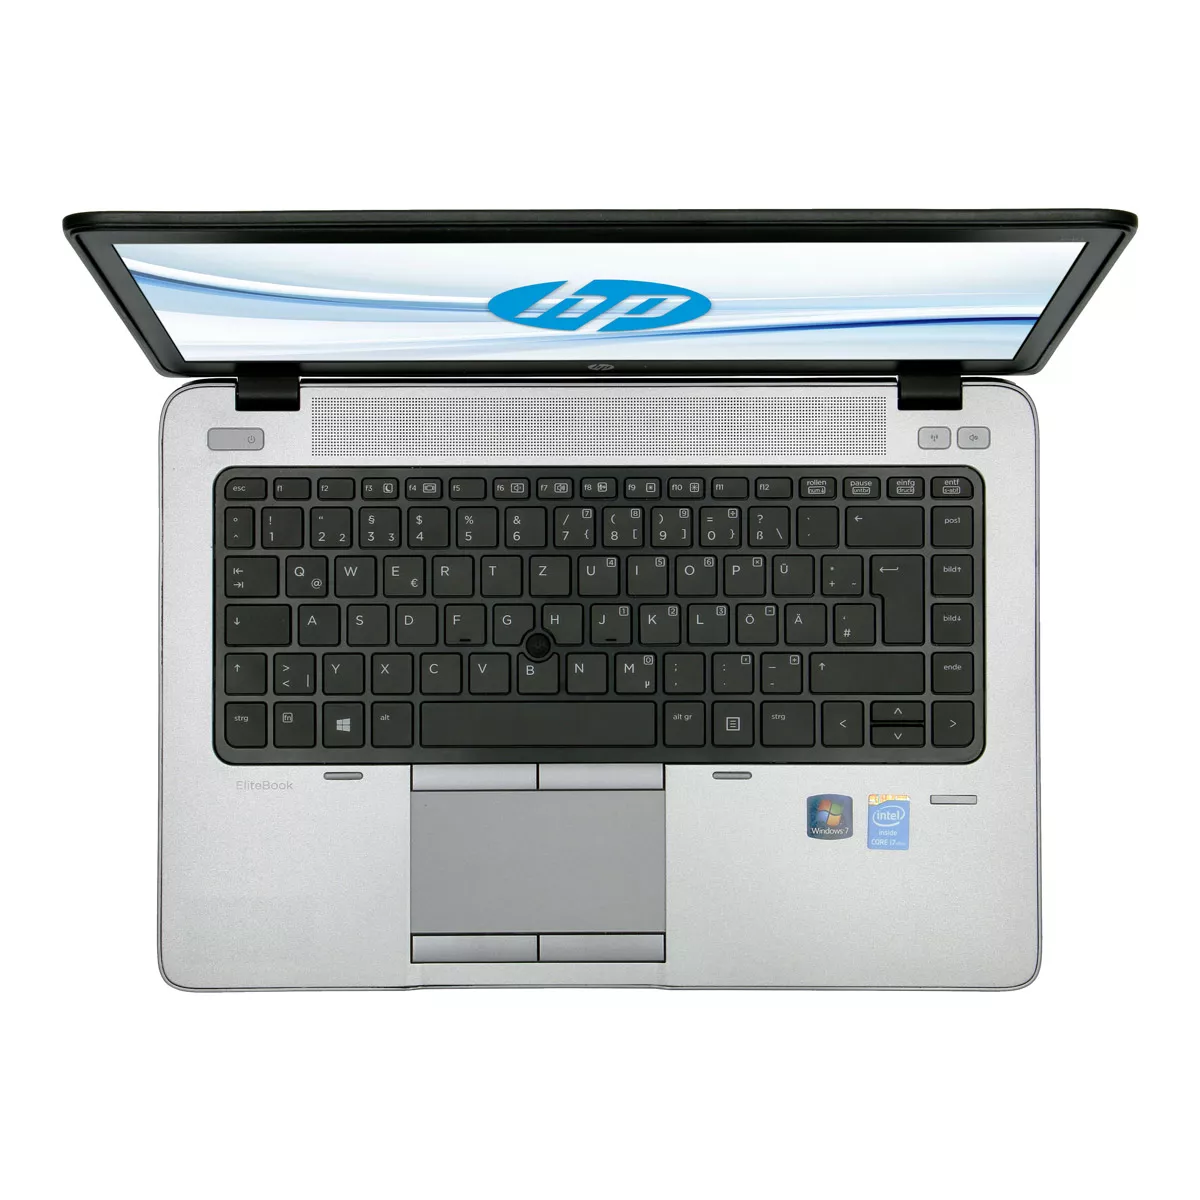 HP EliteBook 840 G1 Core i5 4300U 8 GB 240 GB SSD Webcam A+